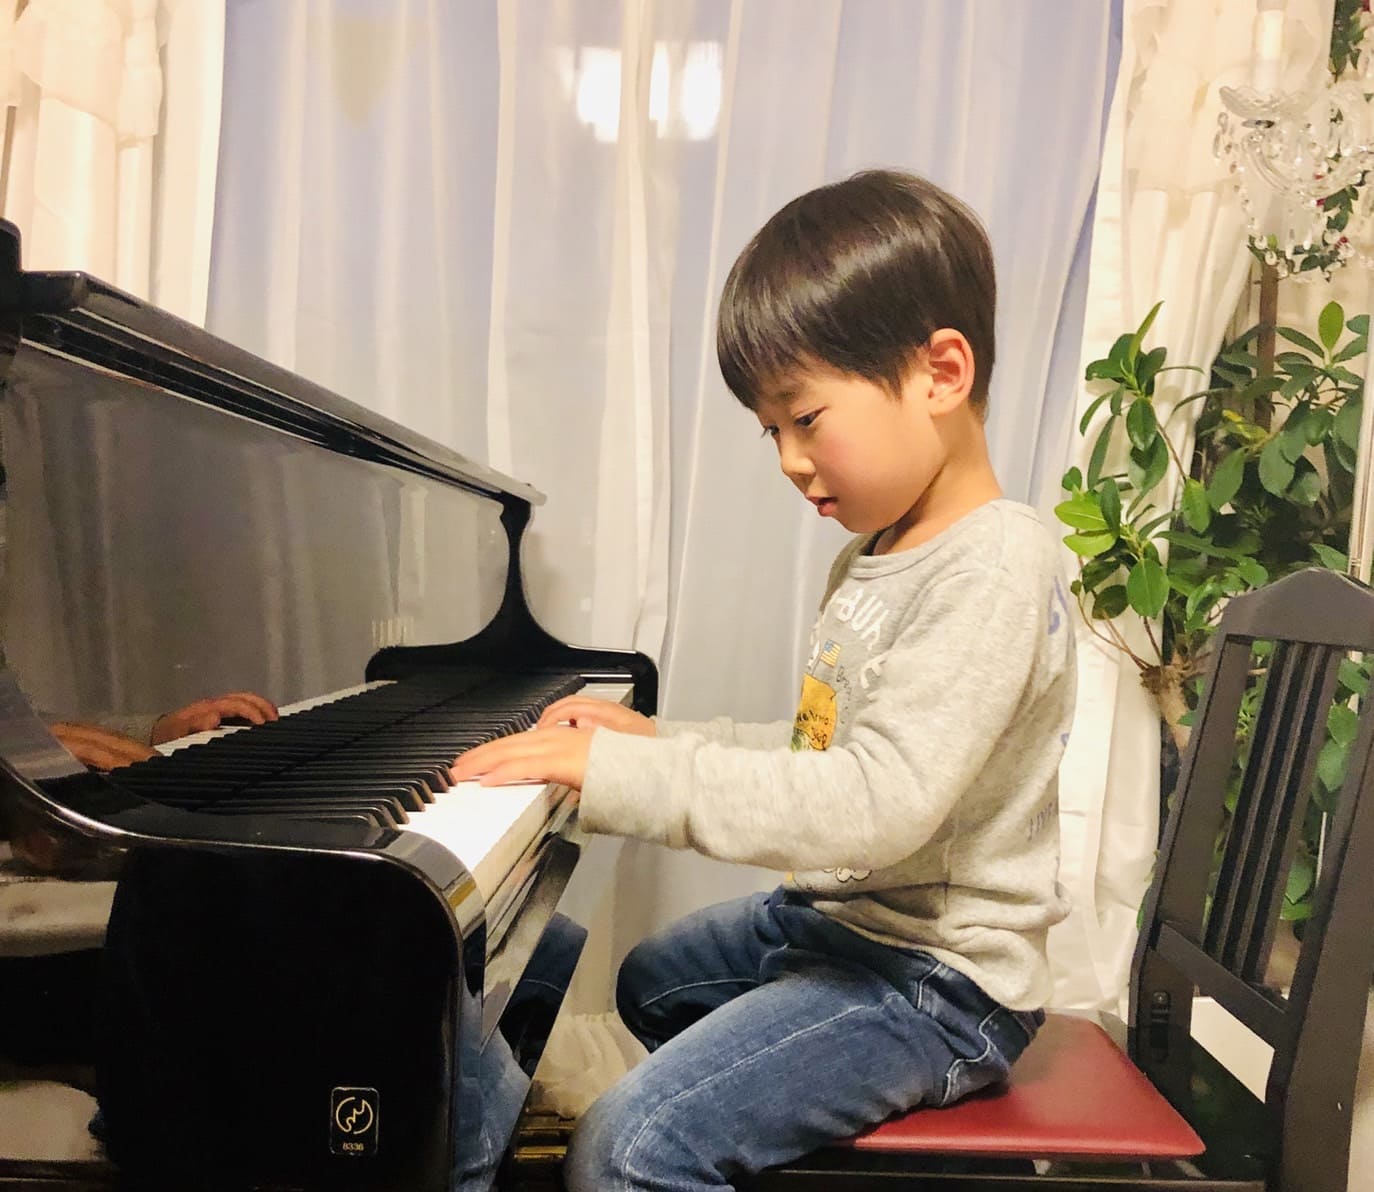 ピアノを弾く子供